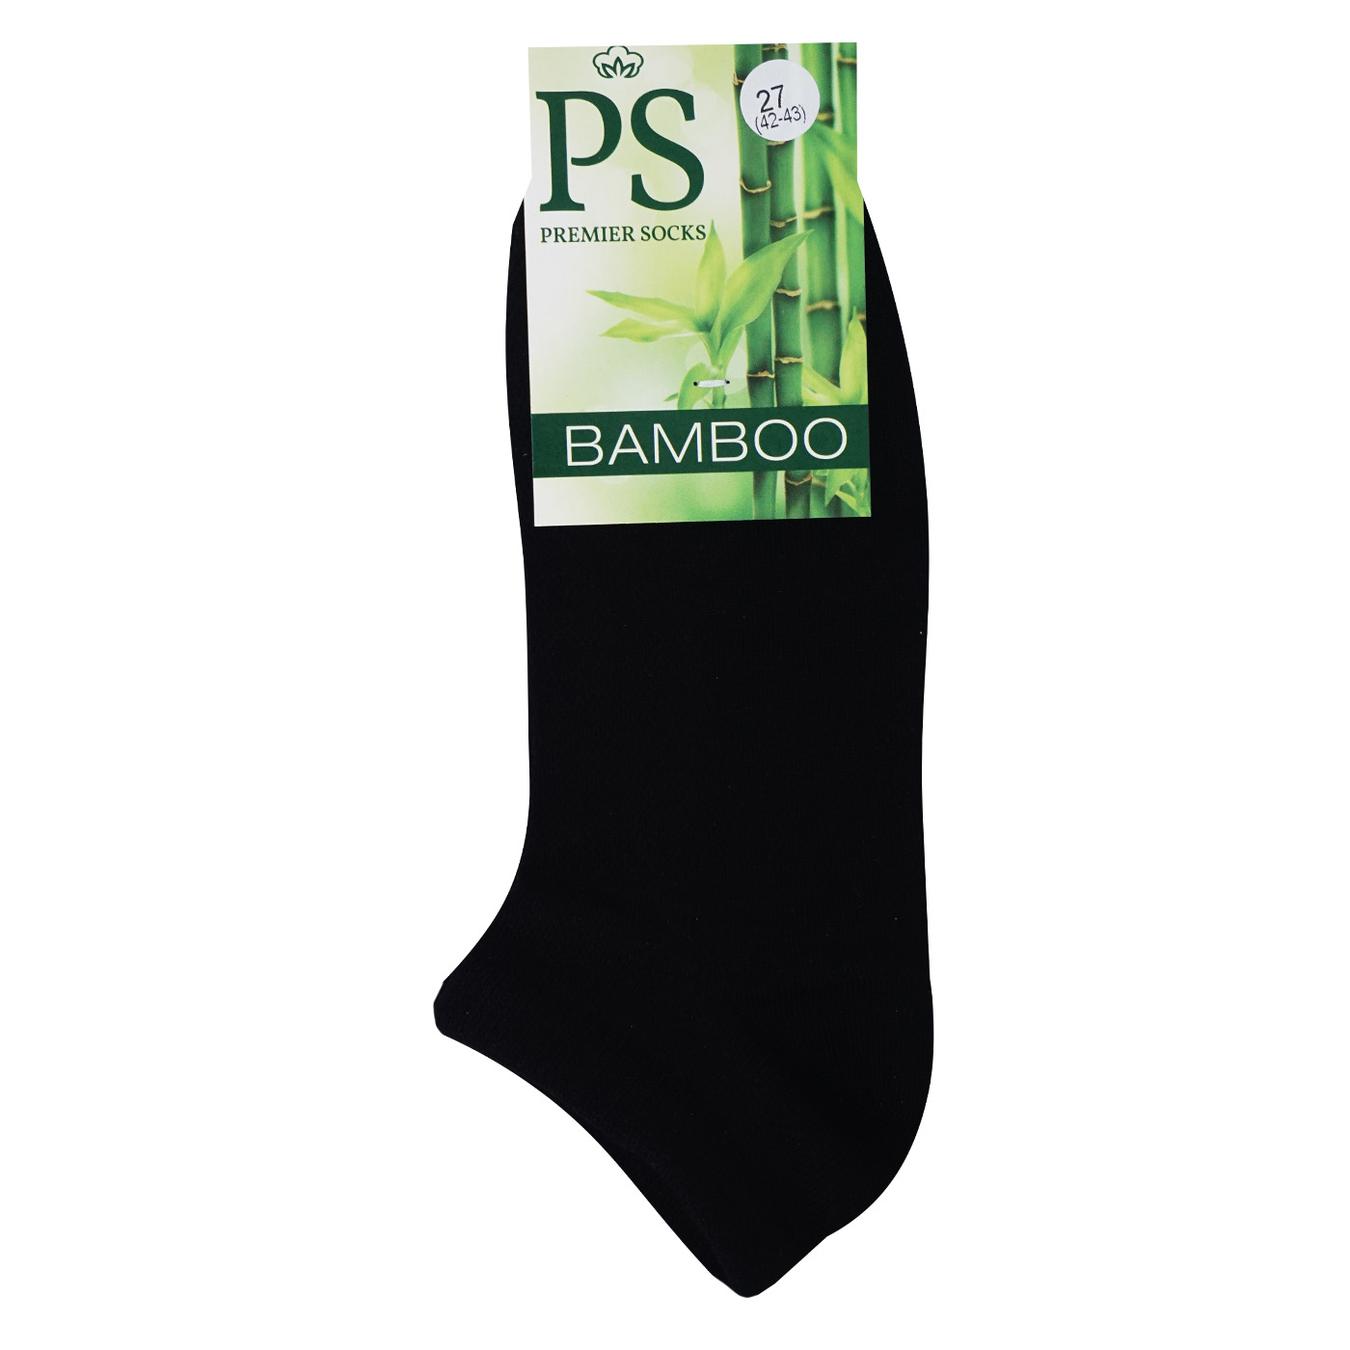 Men's socks Premier Socks Bamboo black short summer mesh 27 years.